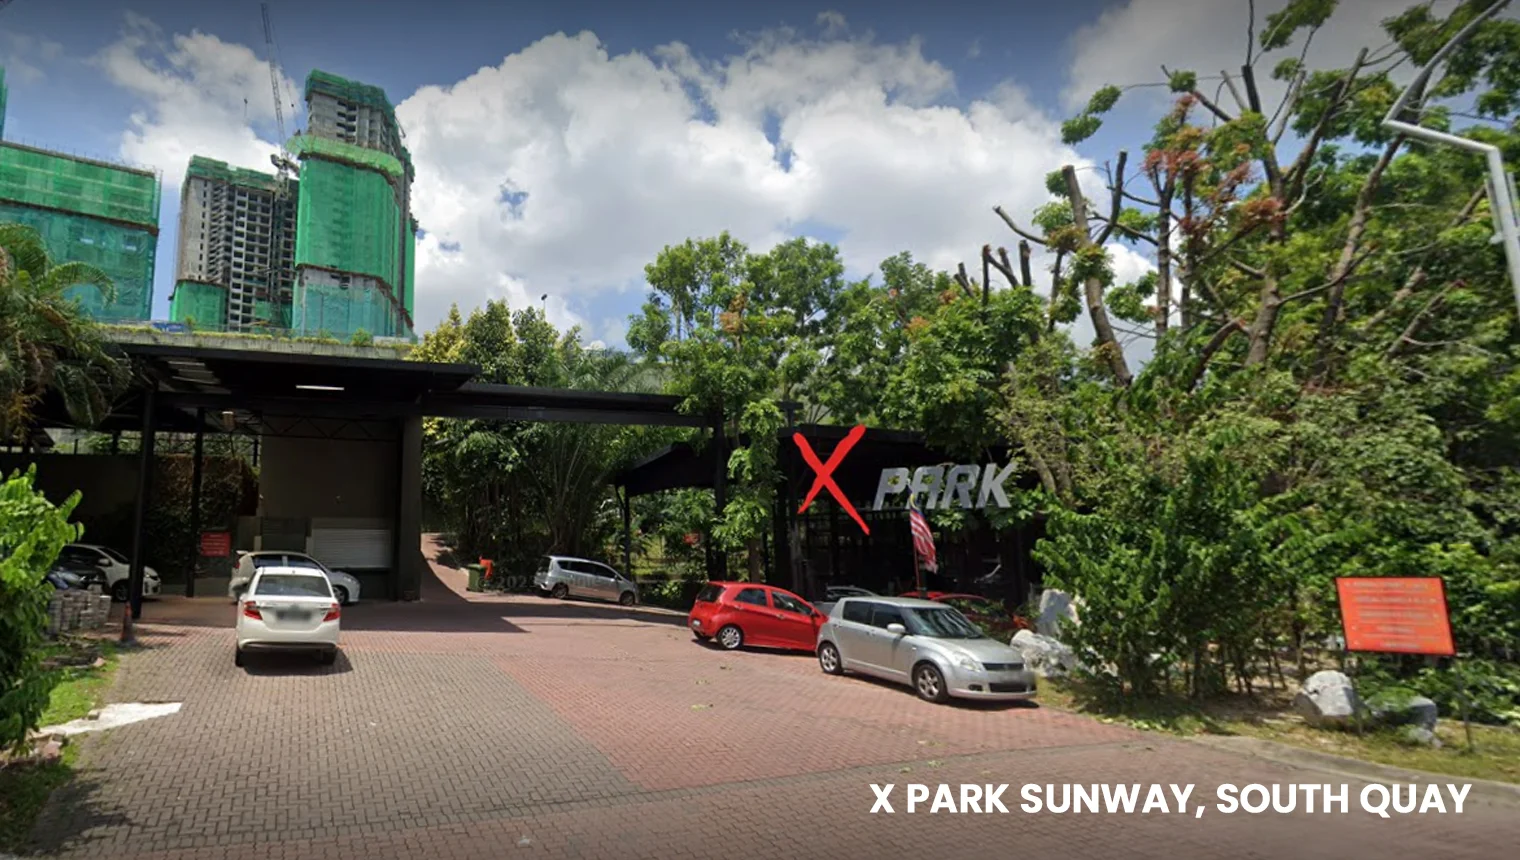 X Park Sunway, South Quay